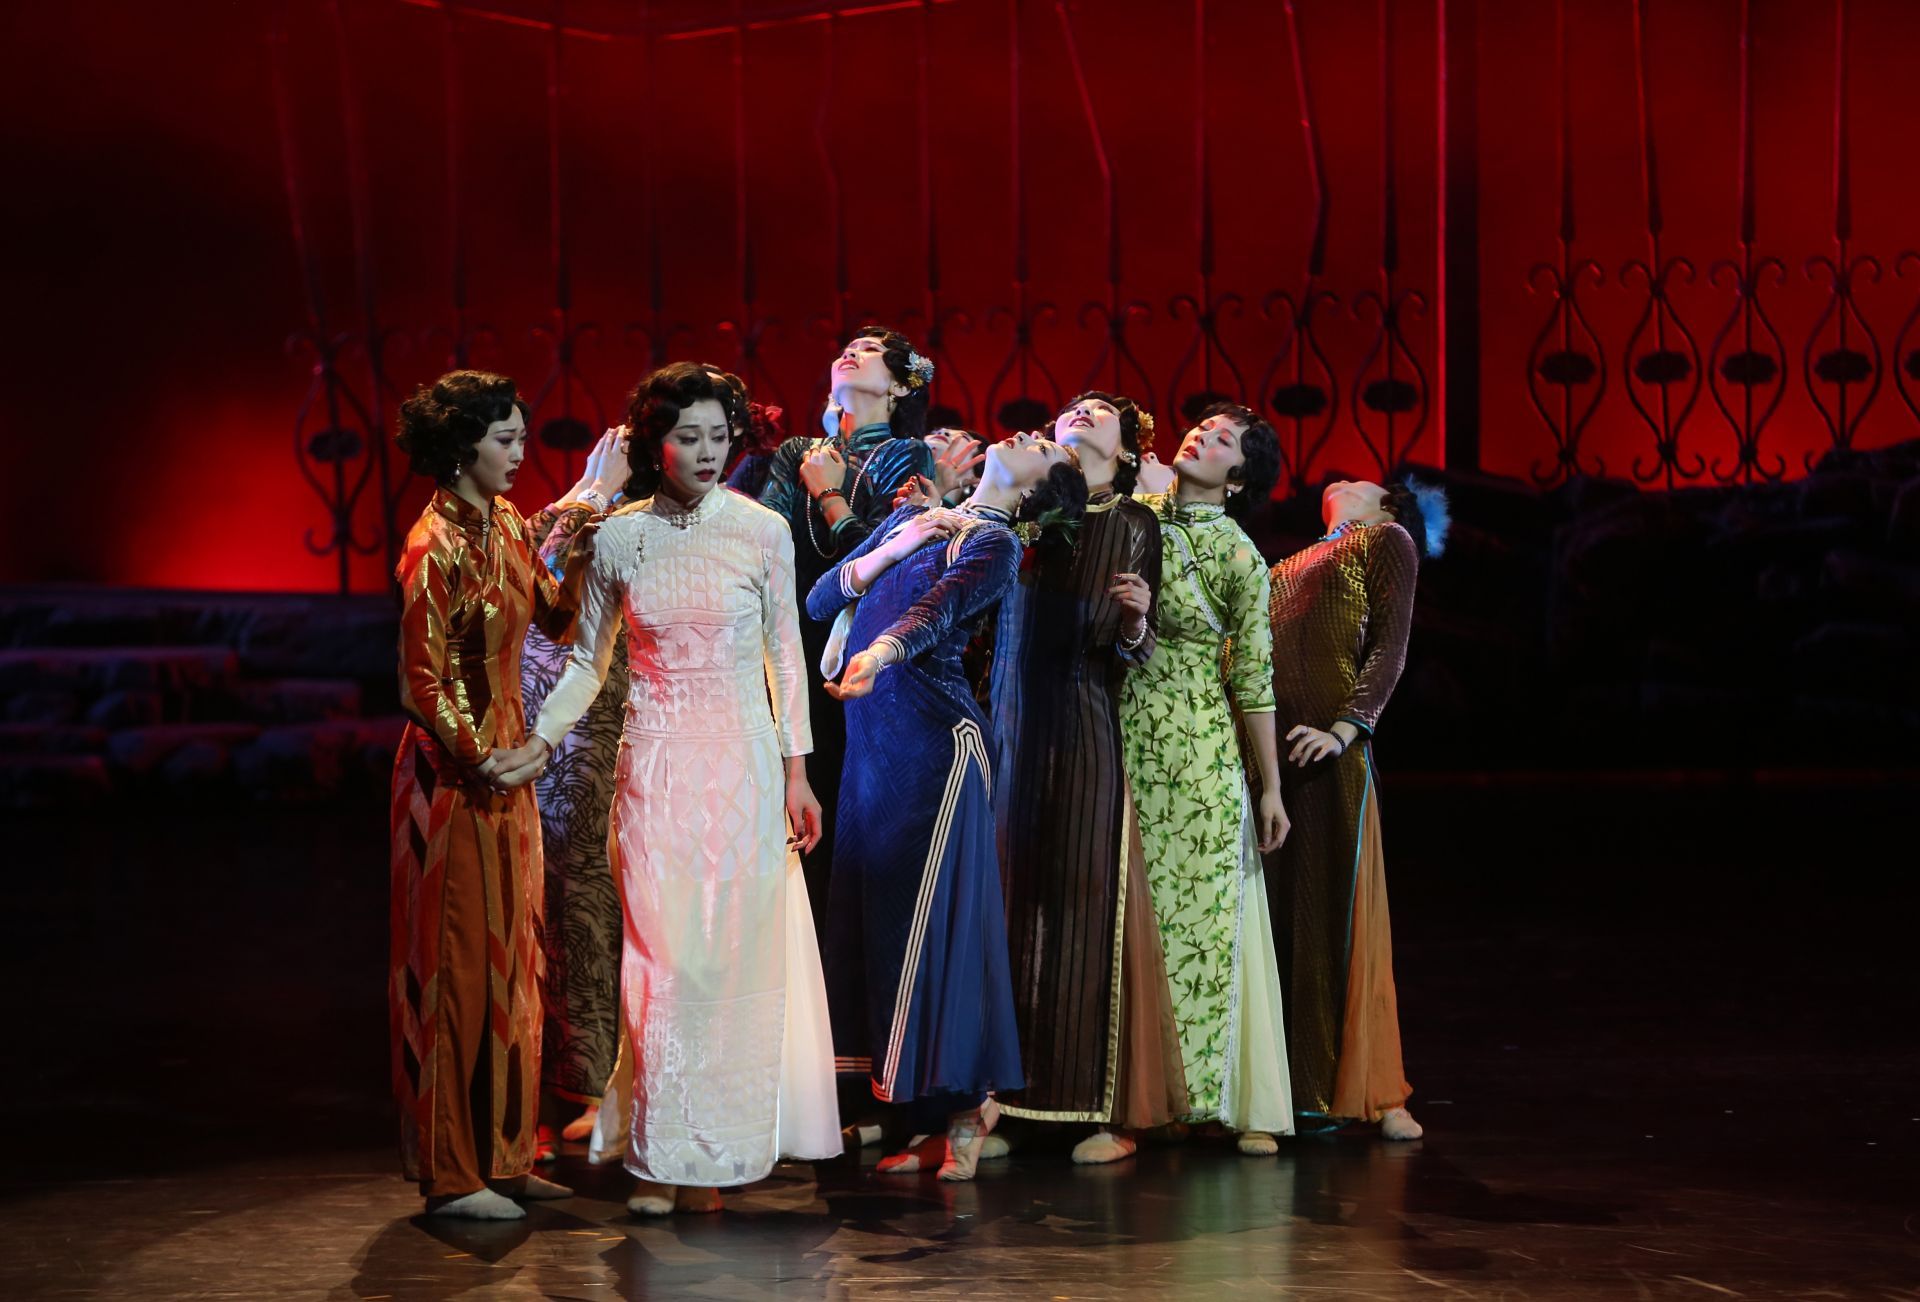 缅怀遇难同胞,大型舞剧《金陵十三钗》在扬州震撼首演